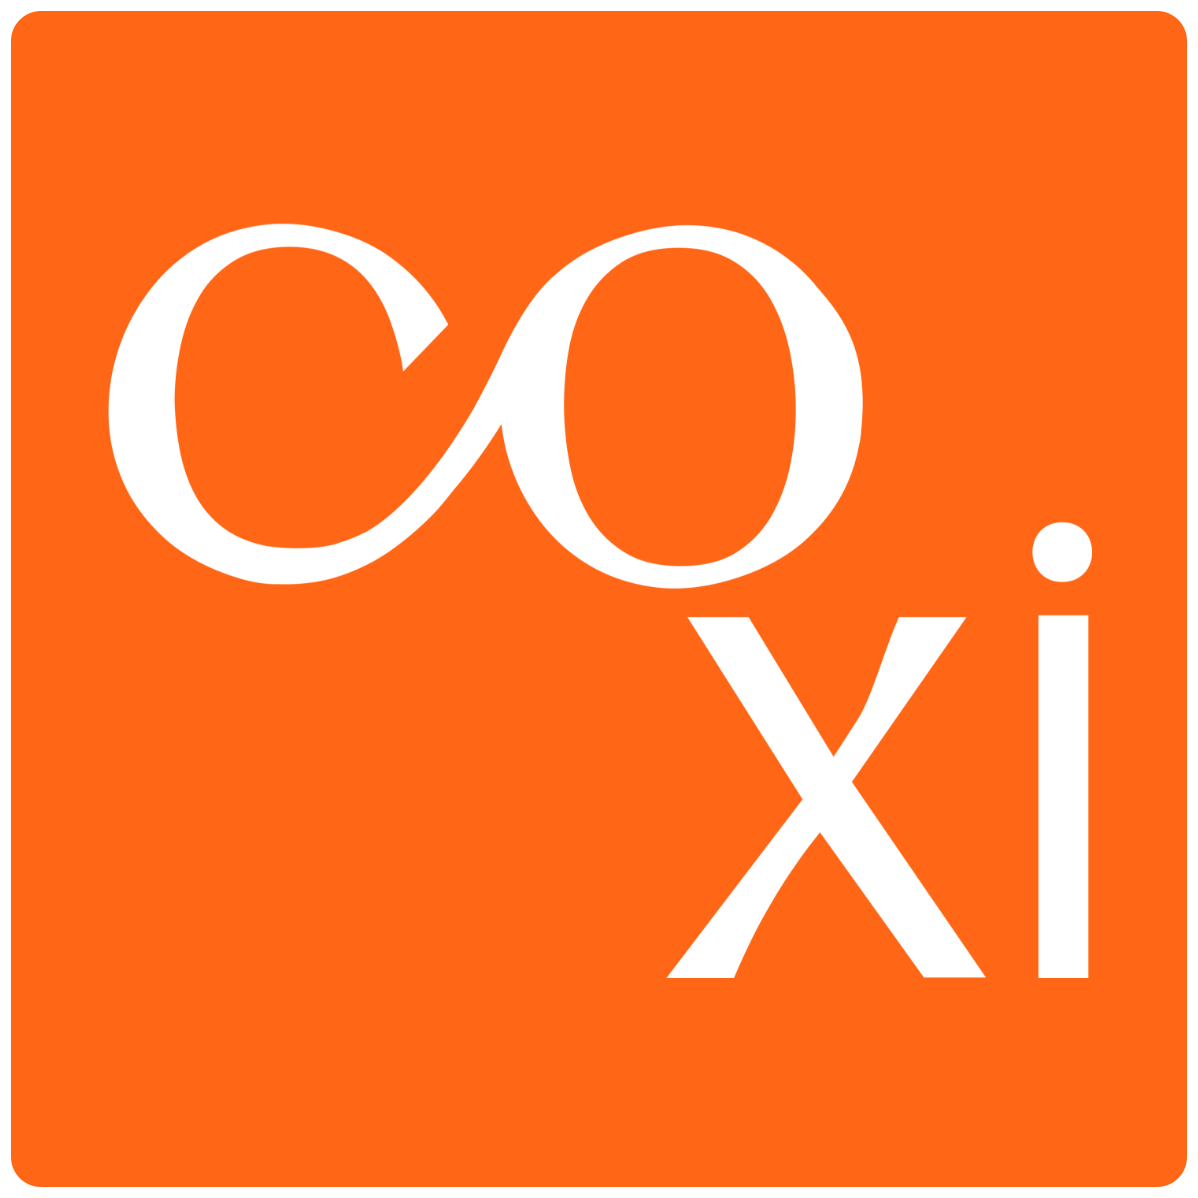 COXI logo